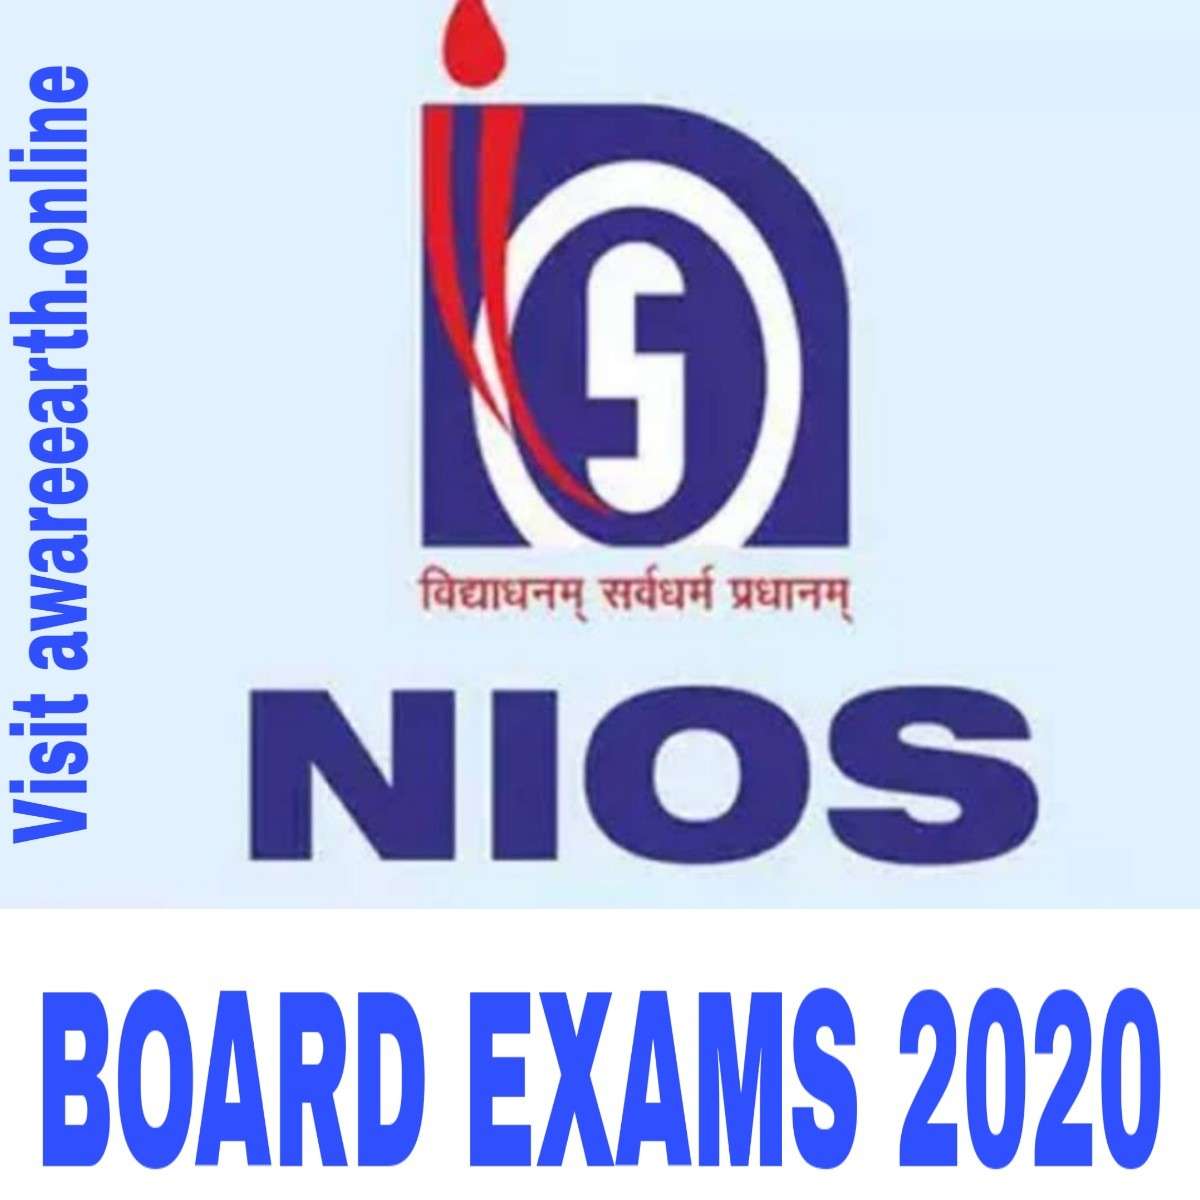 NIOS Board exams 2020